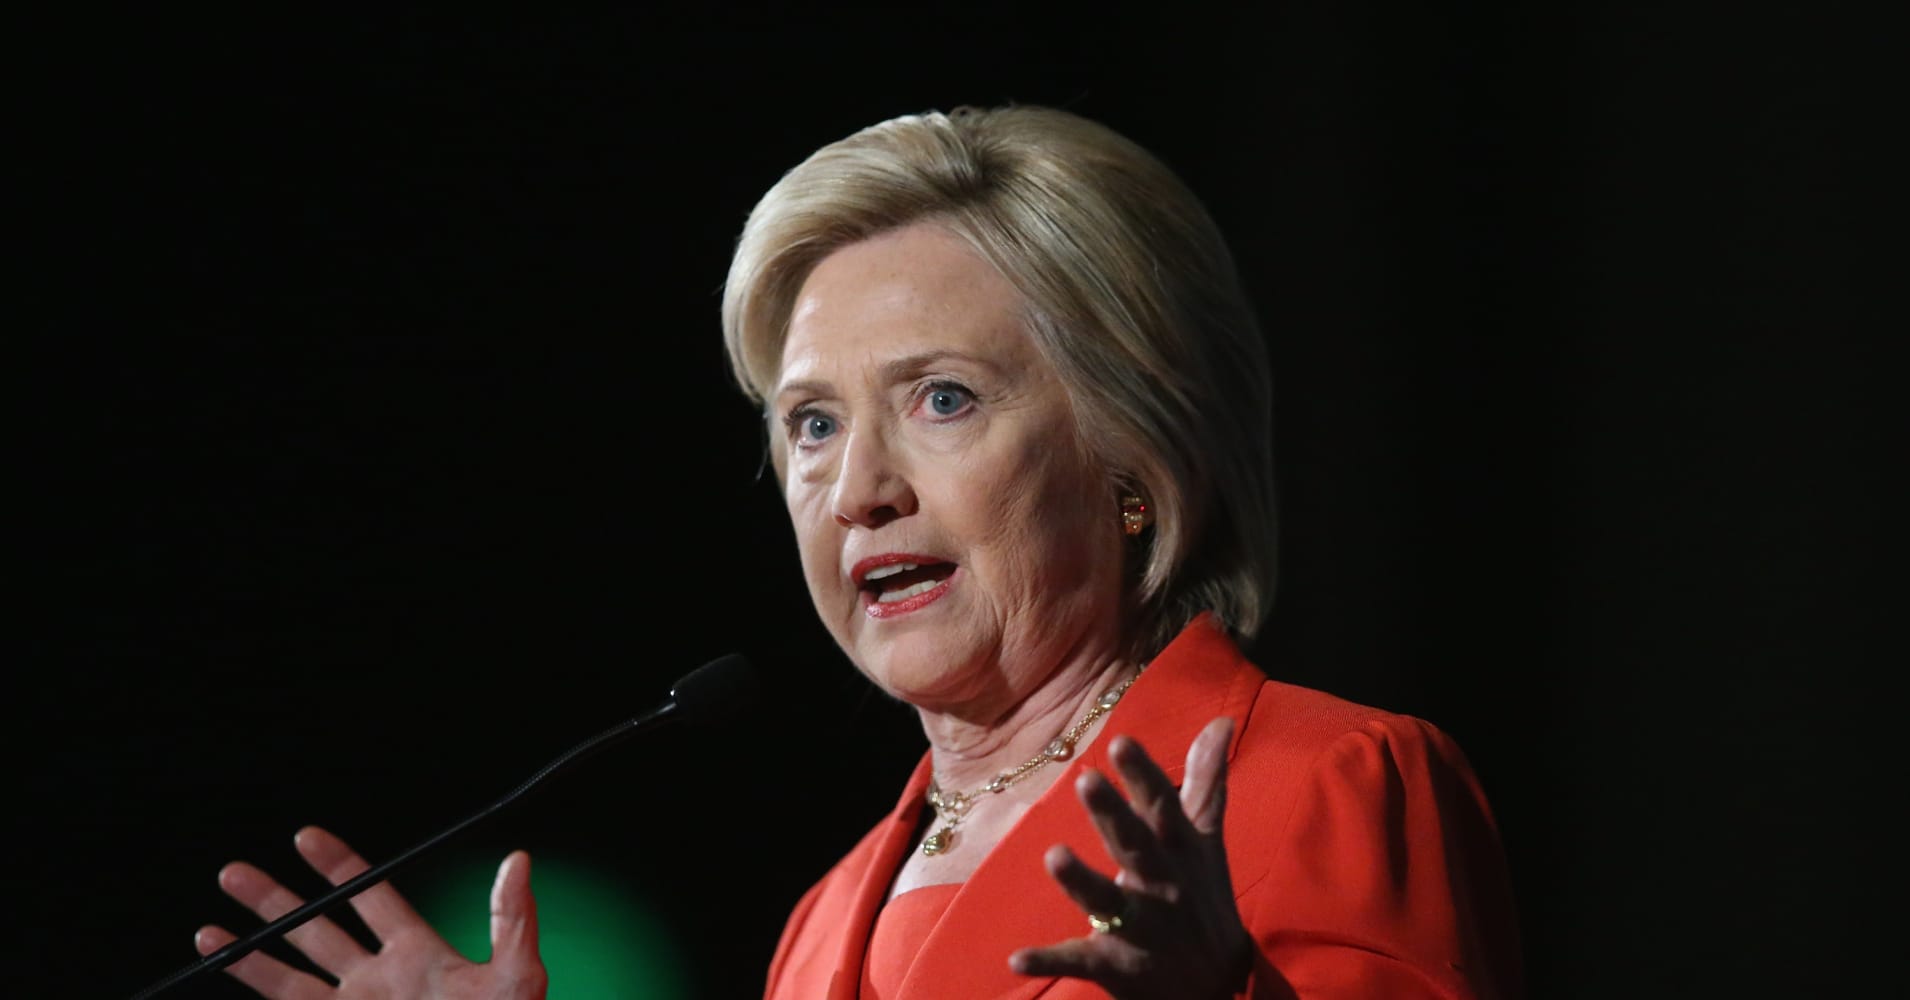 Clinton rakes in Wall Street cash amid tough talk